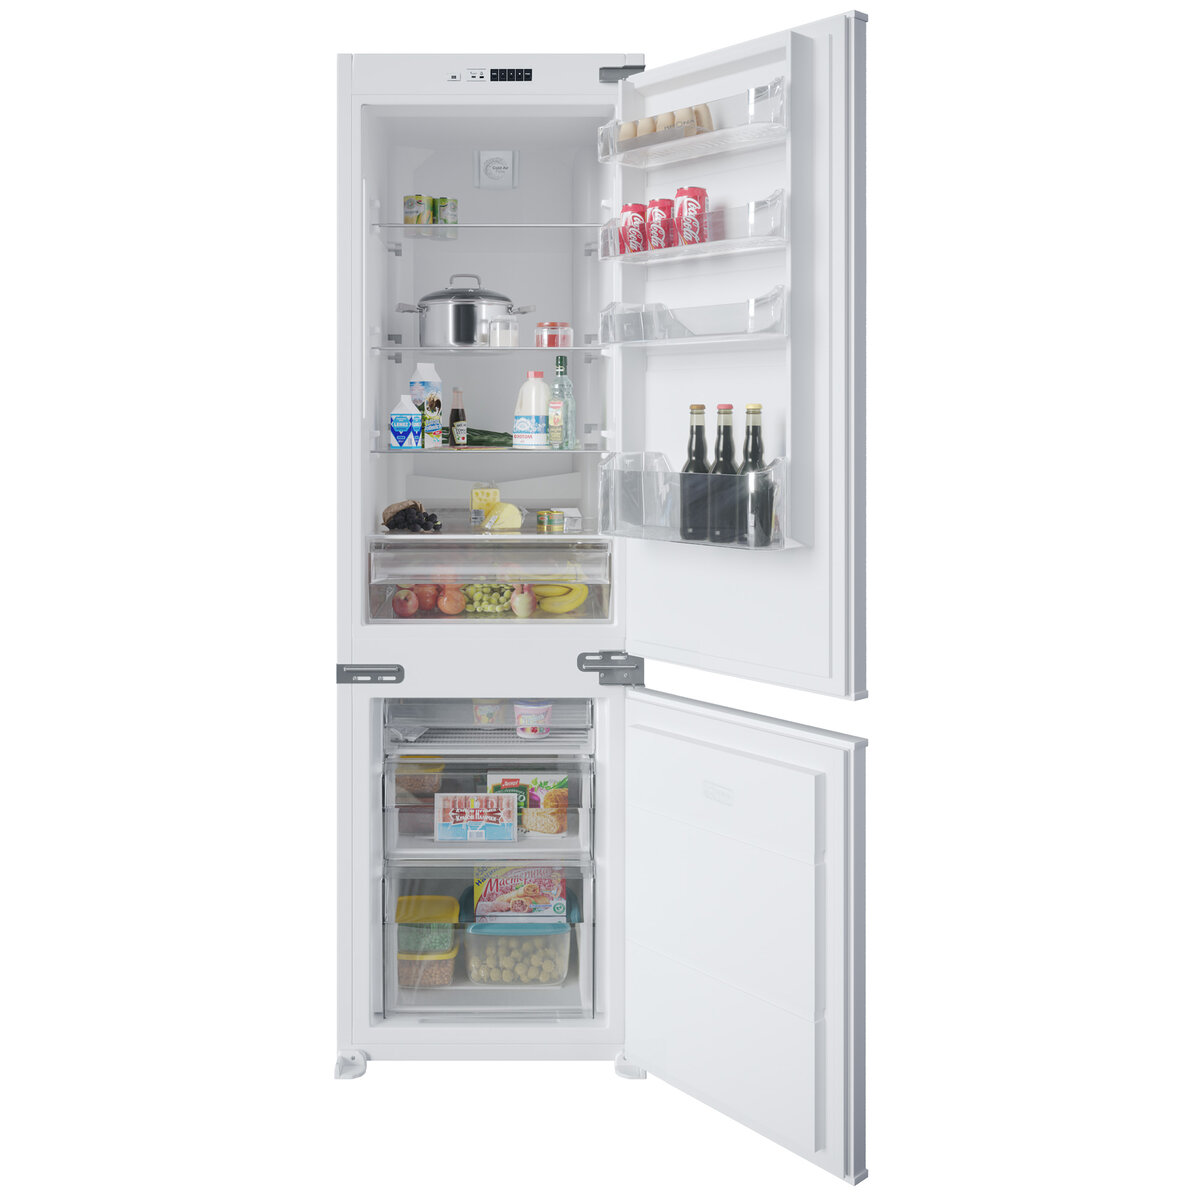 Почему греются боковые стенки холодильника самсунг?